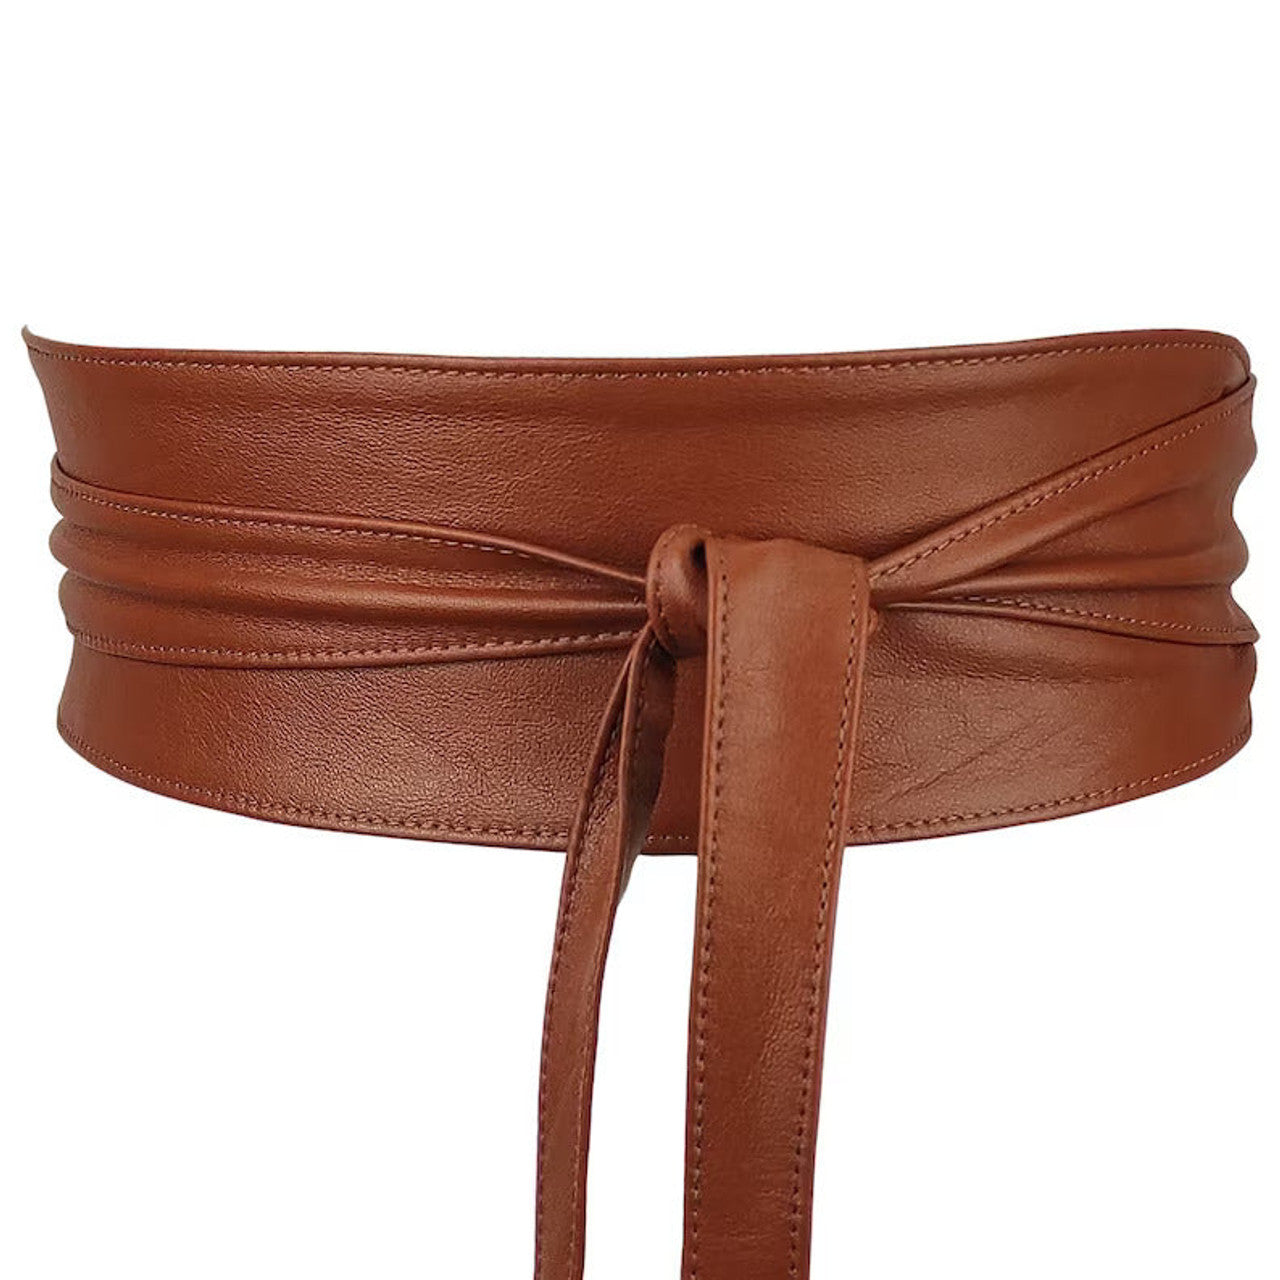 belt,wrap b elt,leather wrap belt, obi belt,leather obi belt,handcrafted belt